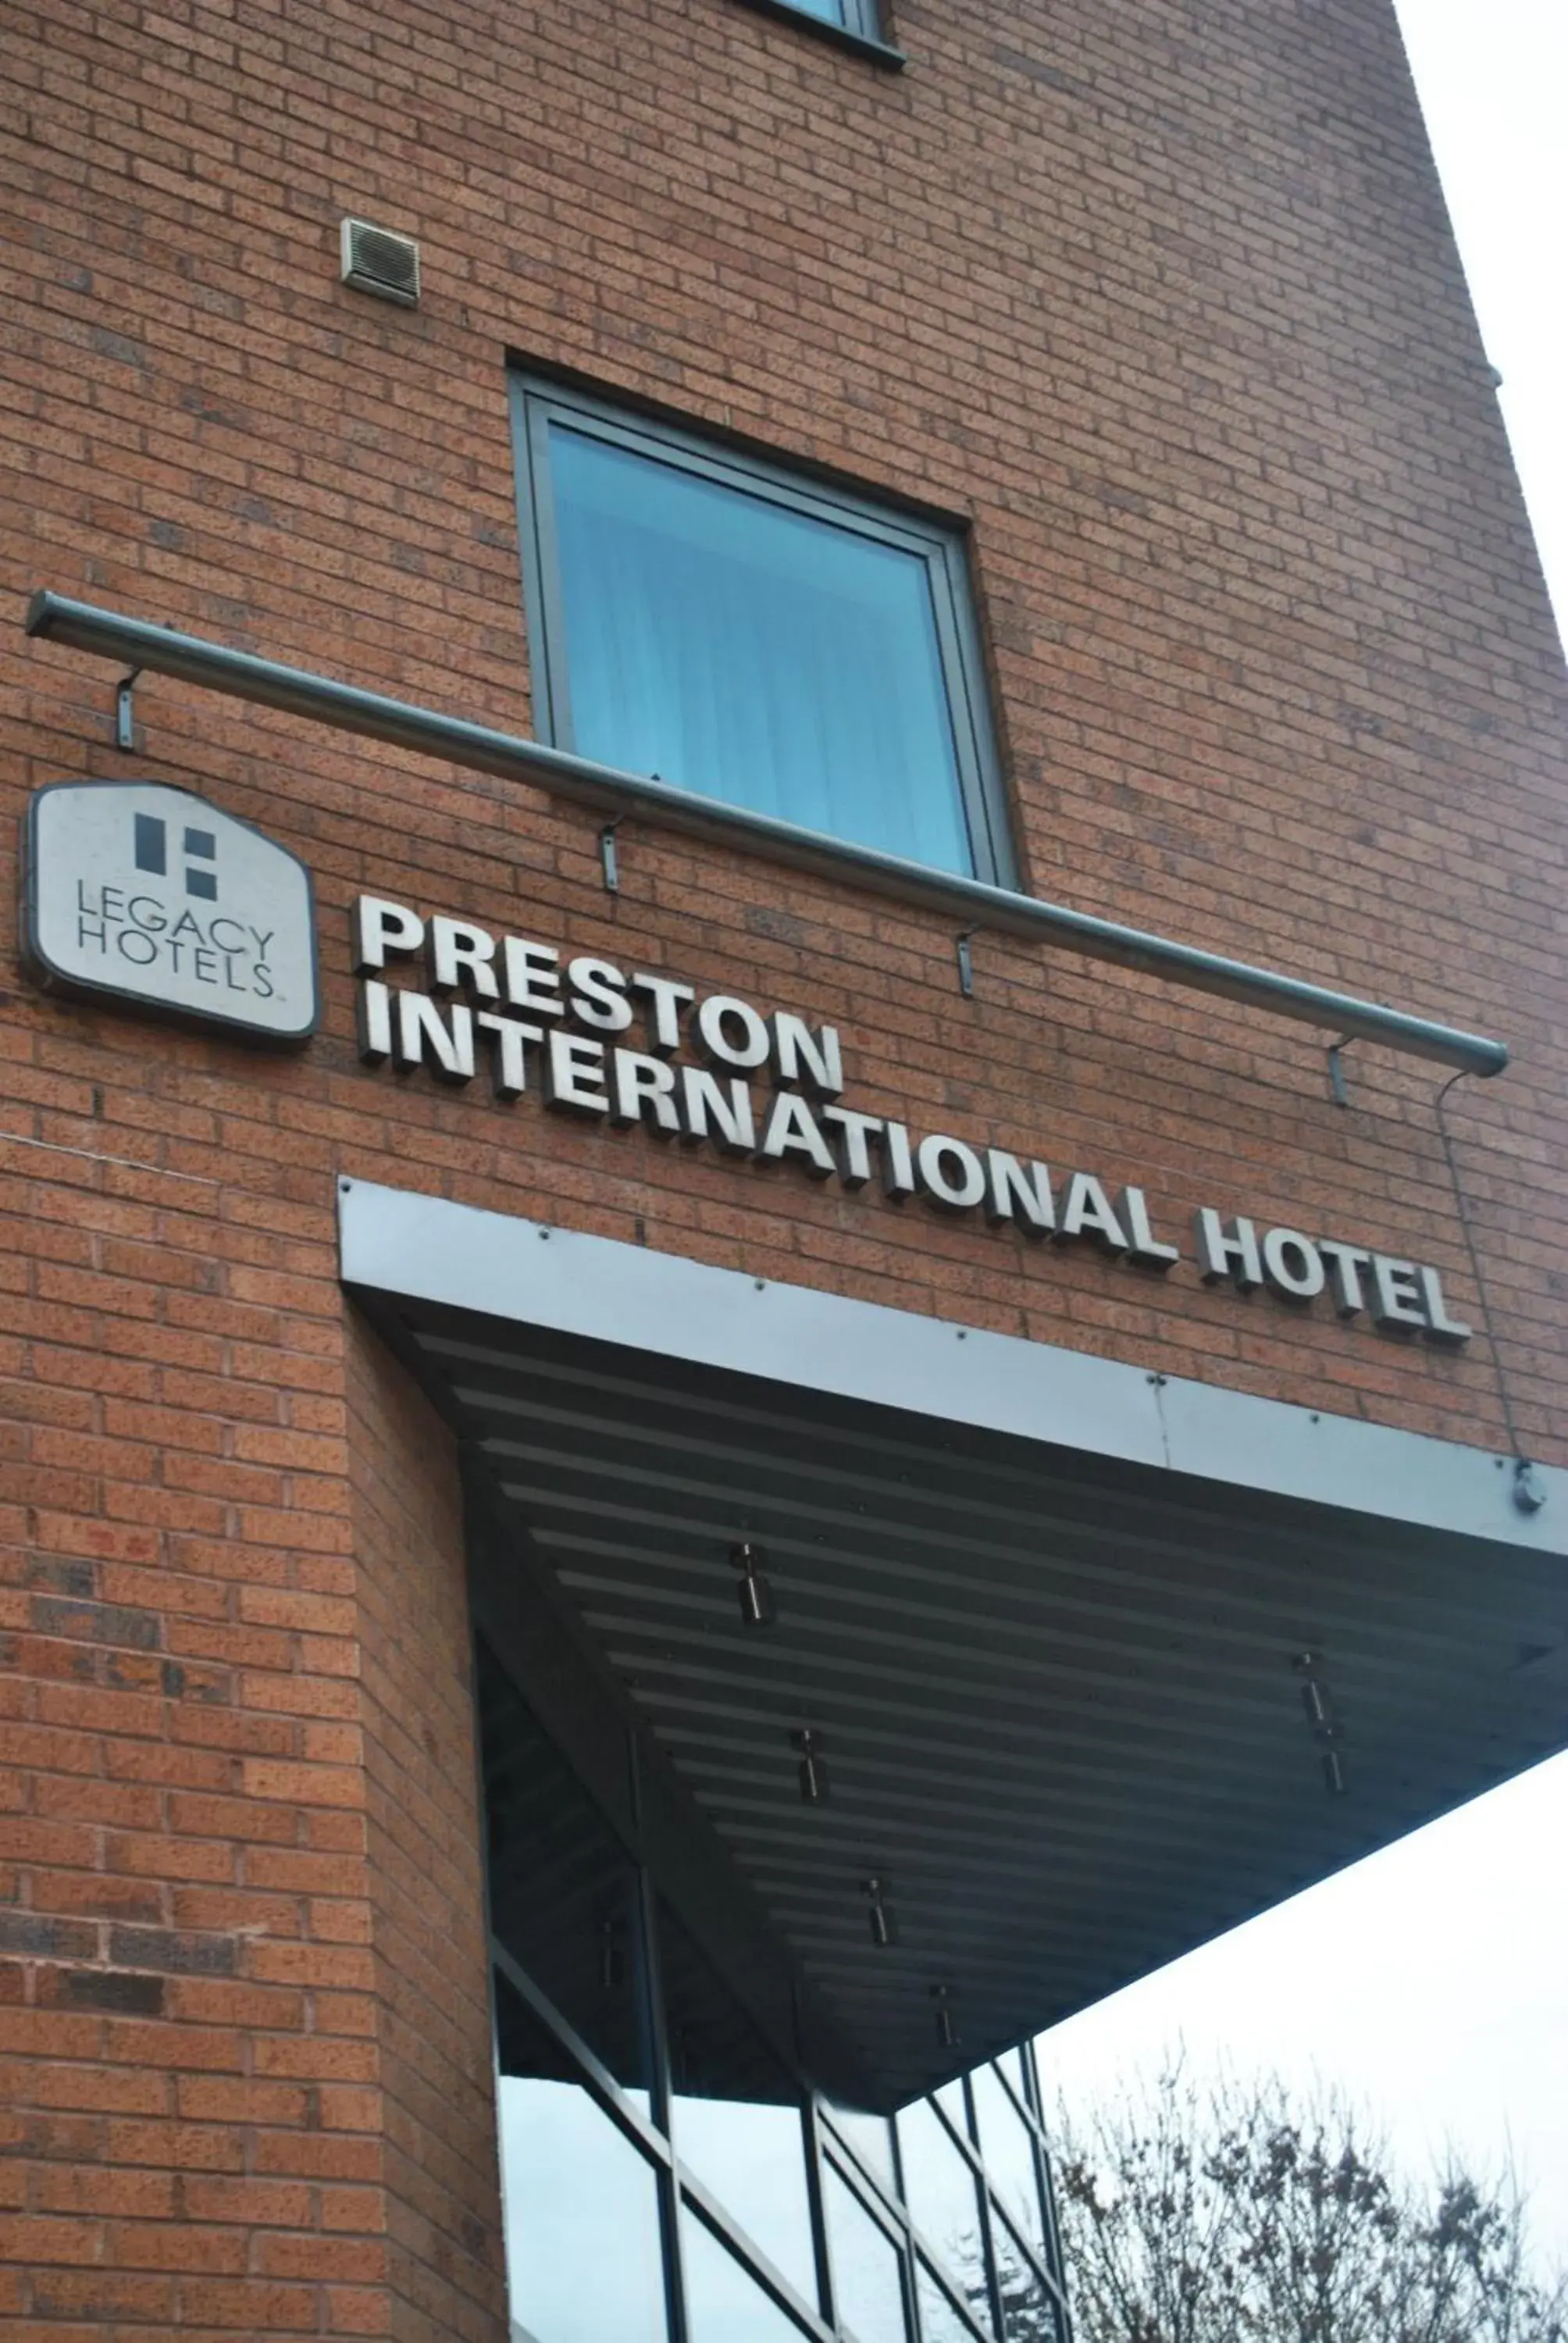 Facade/entrance, Property Building in Legacy Preston International Hotel